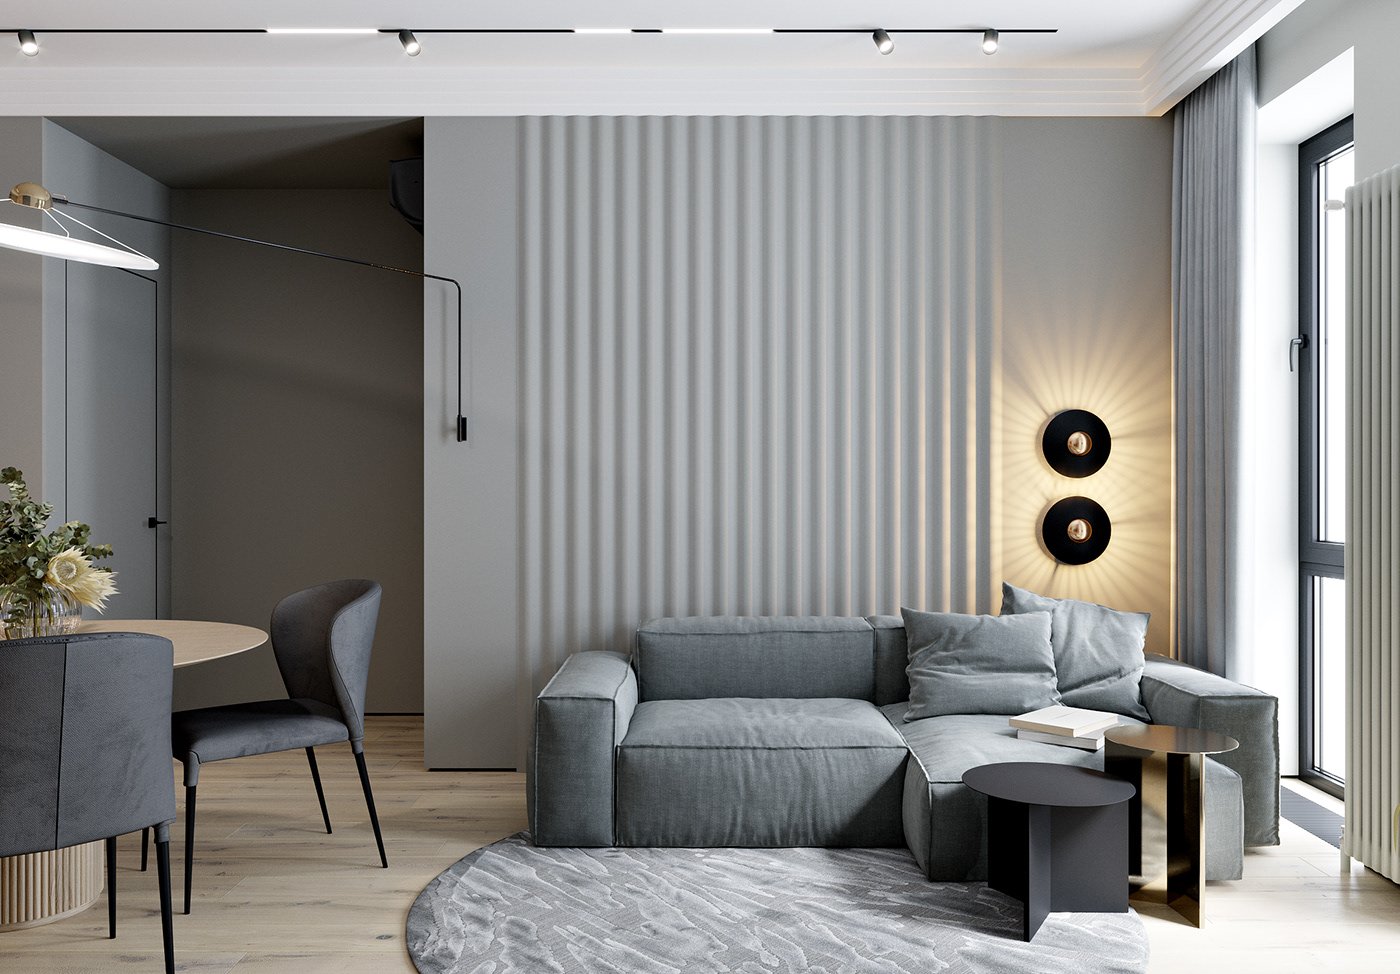 3ds max bedroom bedroom design corona render  interior design  kitchen kitchen design living room living room design visualization